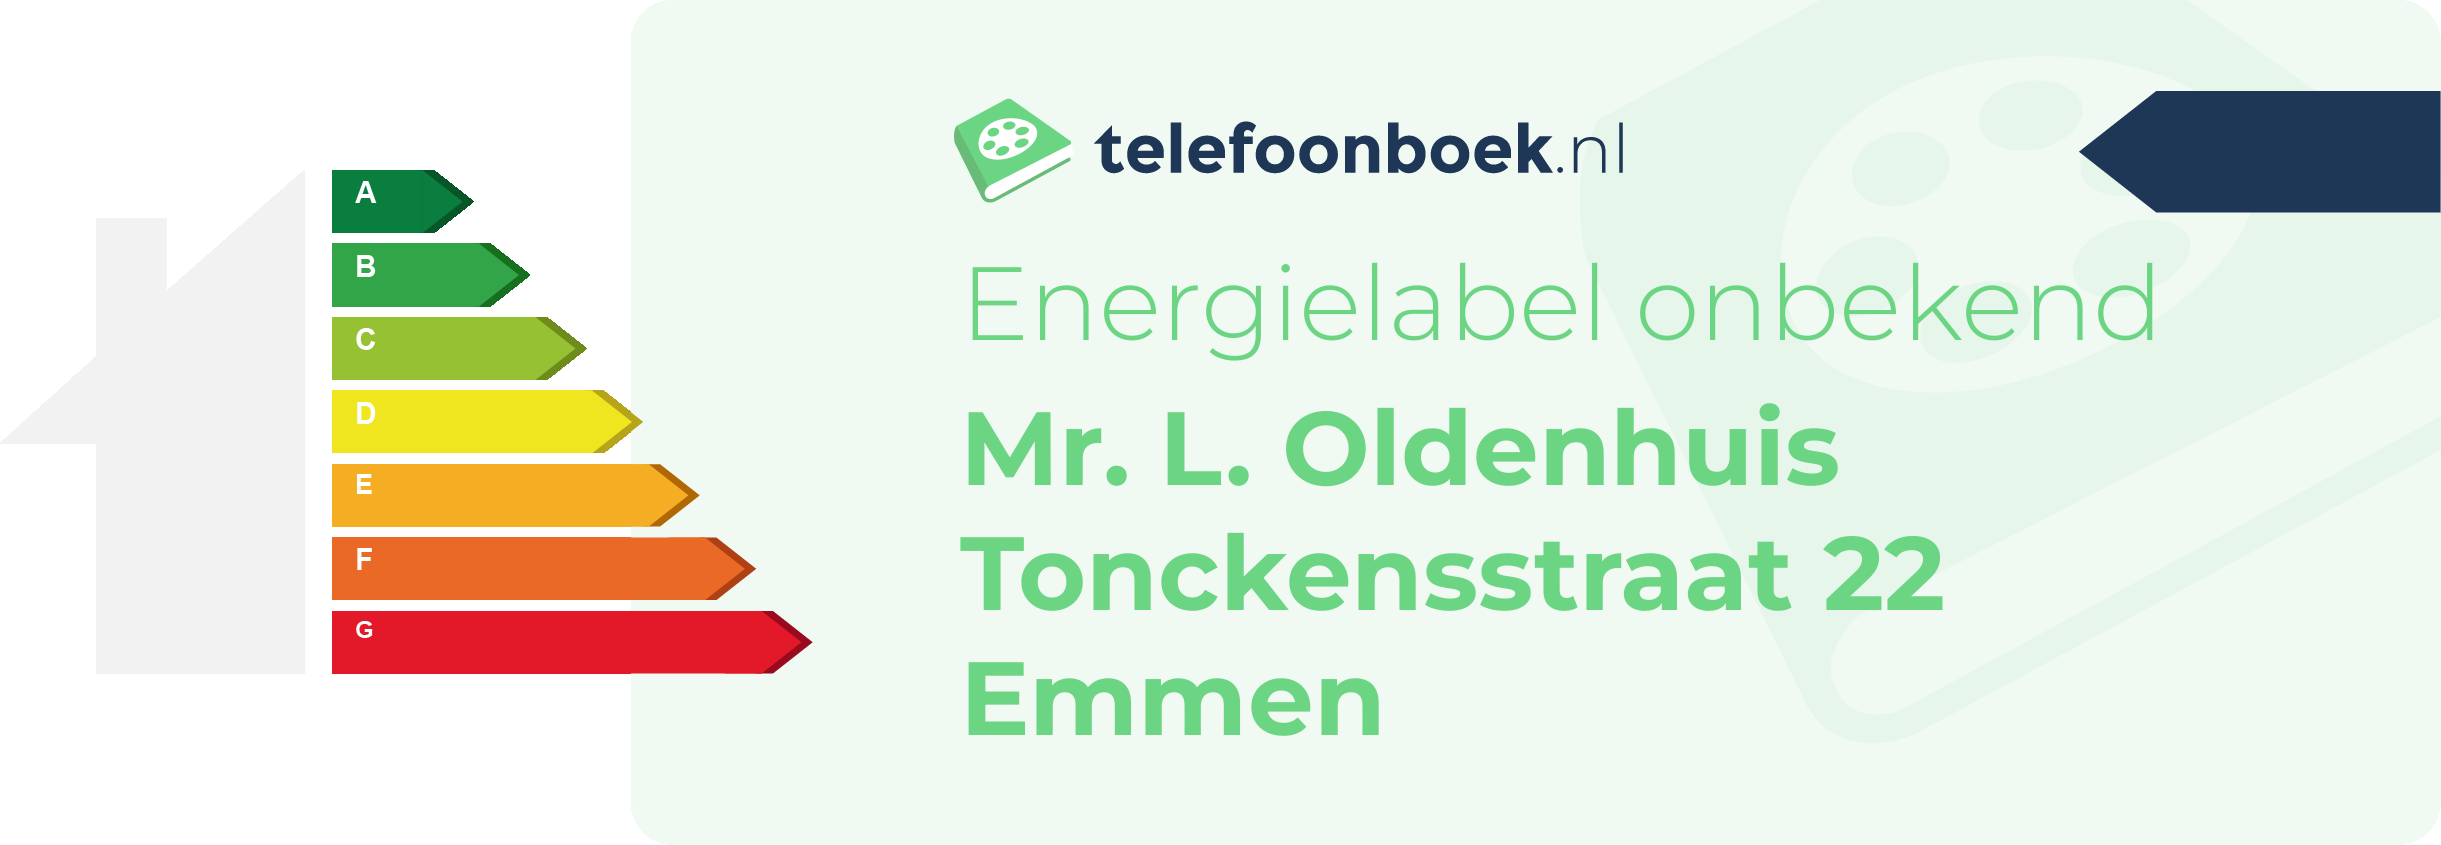 Energielabel Mr. L. Oldenhuis Tonckensstraat 22 Emmen